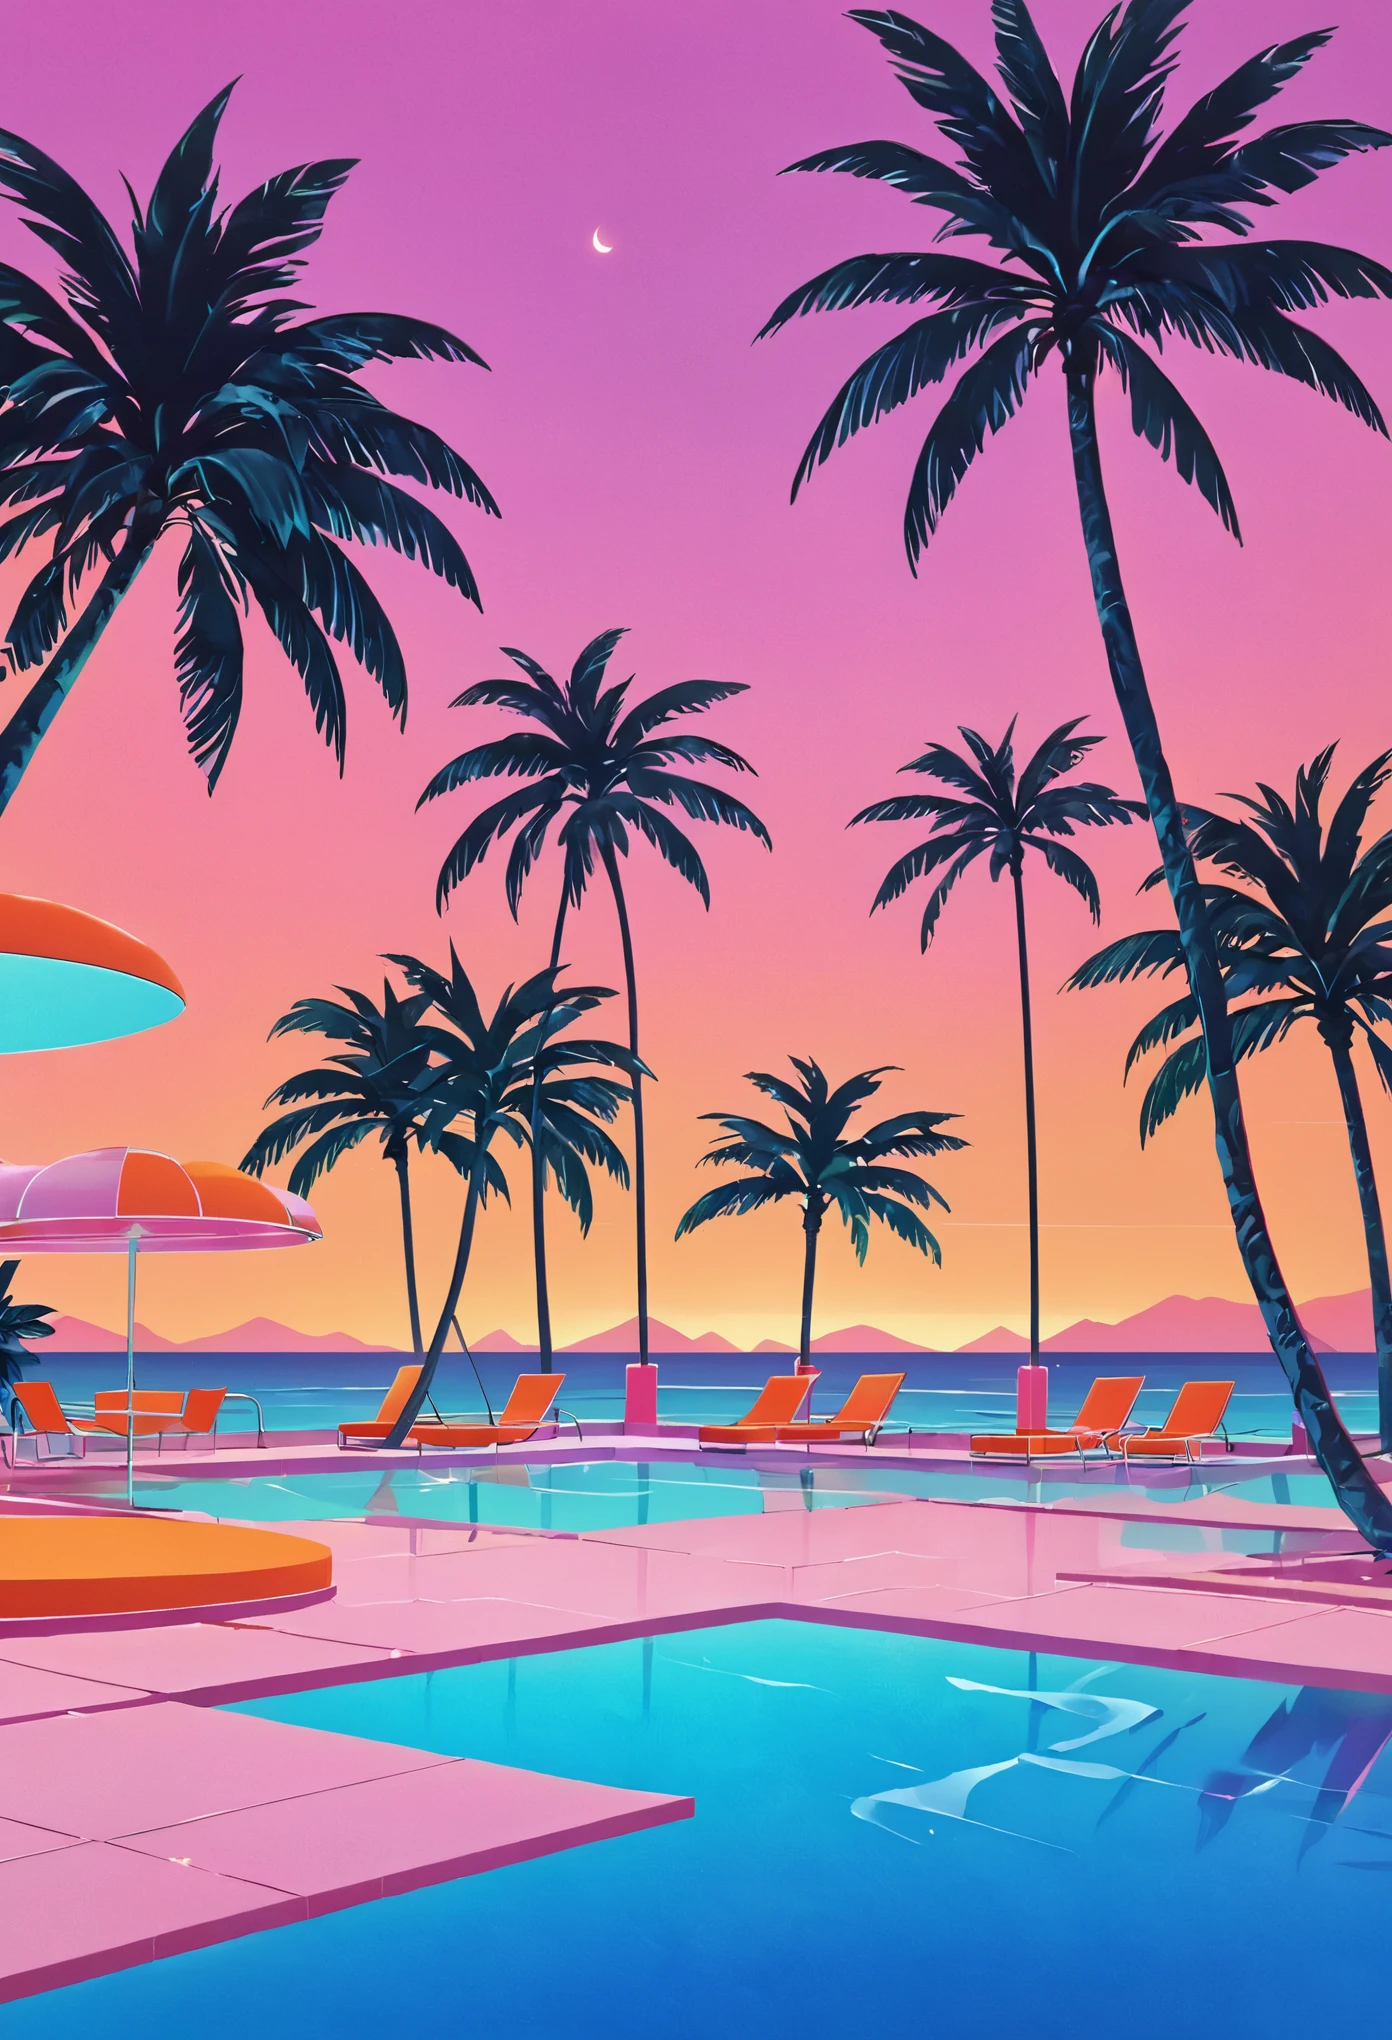 设想一件深深浸透着 80 年代蒸汽波美学的艺术作品, 灵感来自本田洋子 (Yoko Honda) 的活力风格. 想象一下日落时复古未来主义风格的泳池和海滩场景, 天空闪耀着 80 年代夏日落日的温暖色彩——深橙色, 粉红色, 平静的海水和池水反射出红色. 泳池周围, 霓虹灯照亮的棕榈树和椰子树轻轻摇曳, 增强热带和超现实的氛围. 几何图案的霓虹灯照亮了现场, 为一切事物投射出梦幻般的光芒. 背景是一个别致的海滨酒吧，透过大玻璃窗可以看到酒吧内部, 展示一间墙壁和地板为柔和色调的房间，铺有奢华的水磨石和大理石纹理. 整体氛围融合了怀旧奢华与活力, 暖色调, 创造出一种永恒而又能让人回忆起 80 年代的场景.